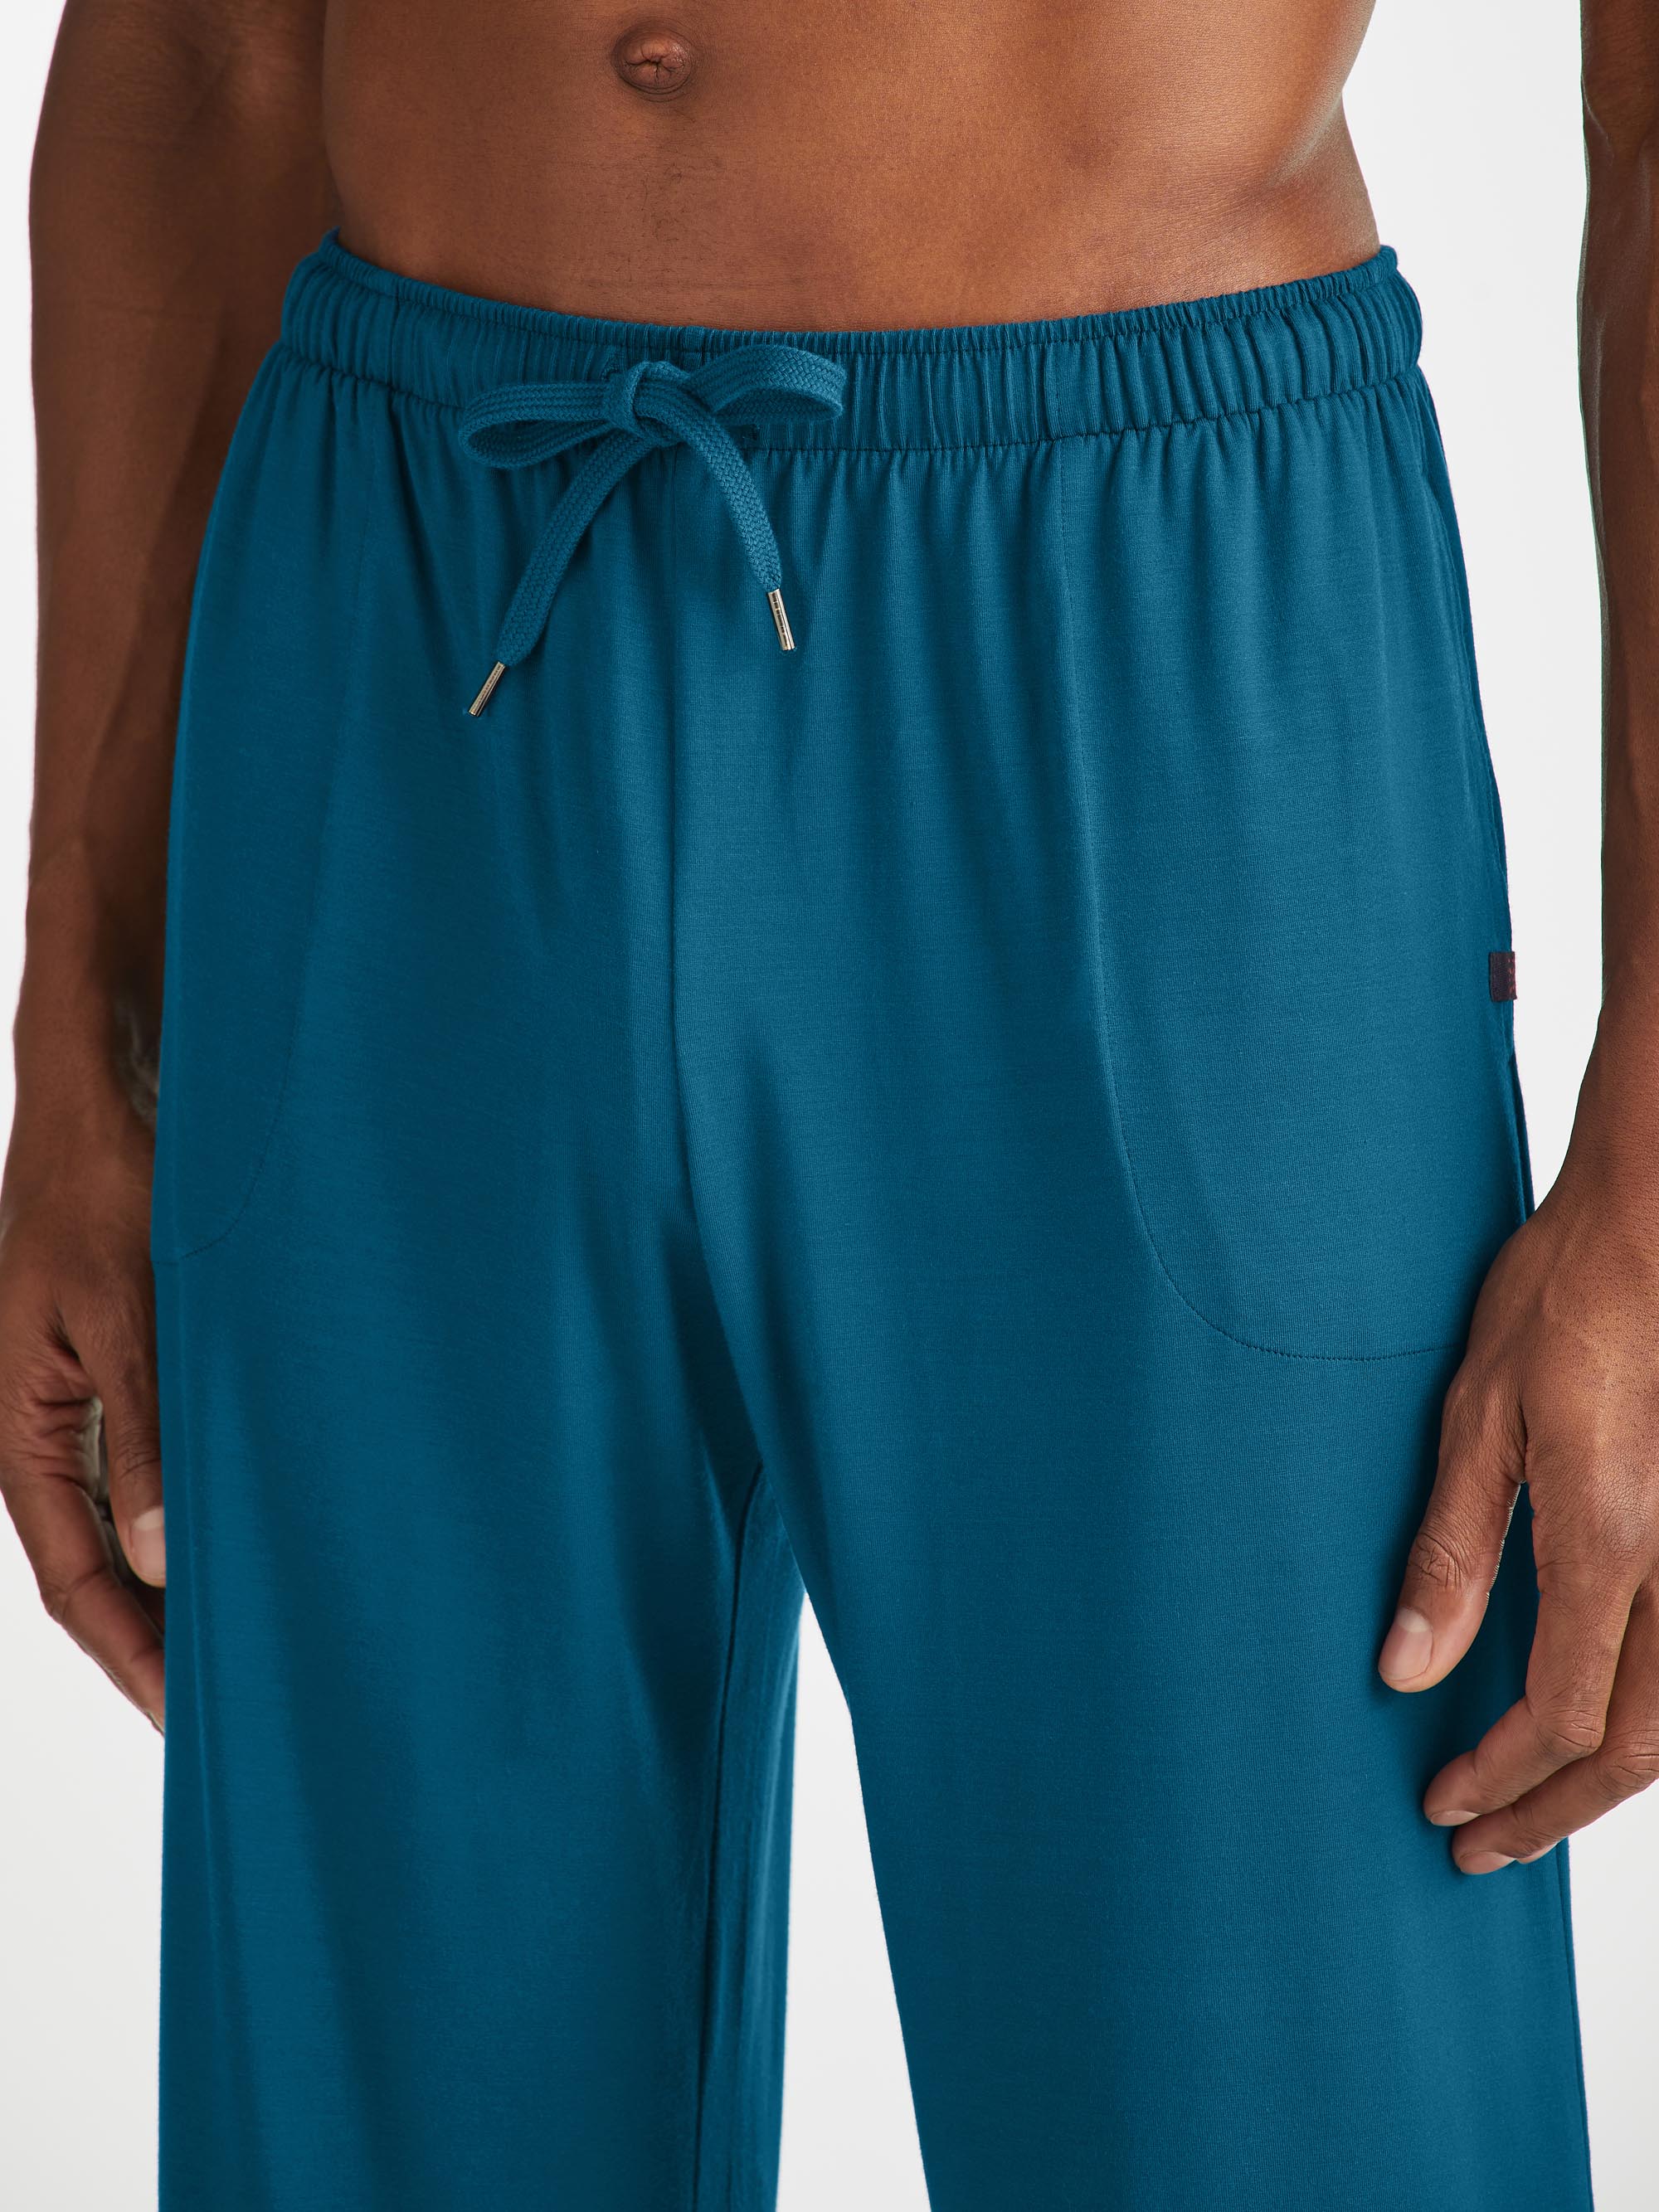 Men's Lounge Trousers Basel Micro Modal Stretch Poseidon Blue